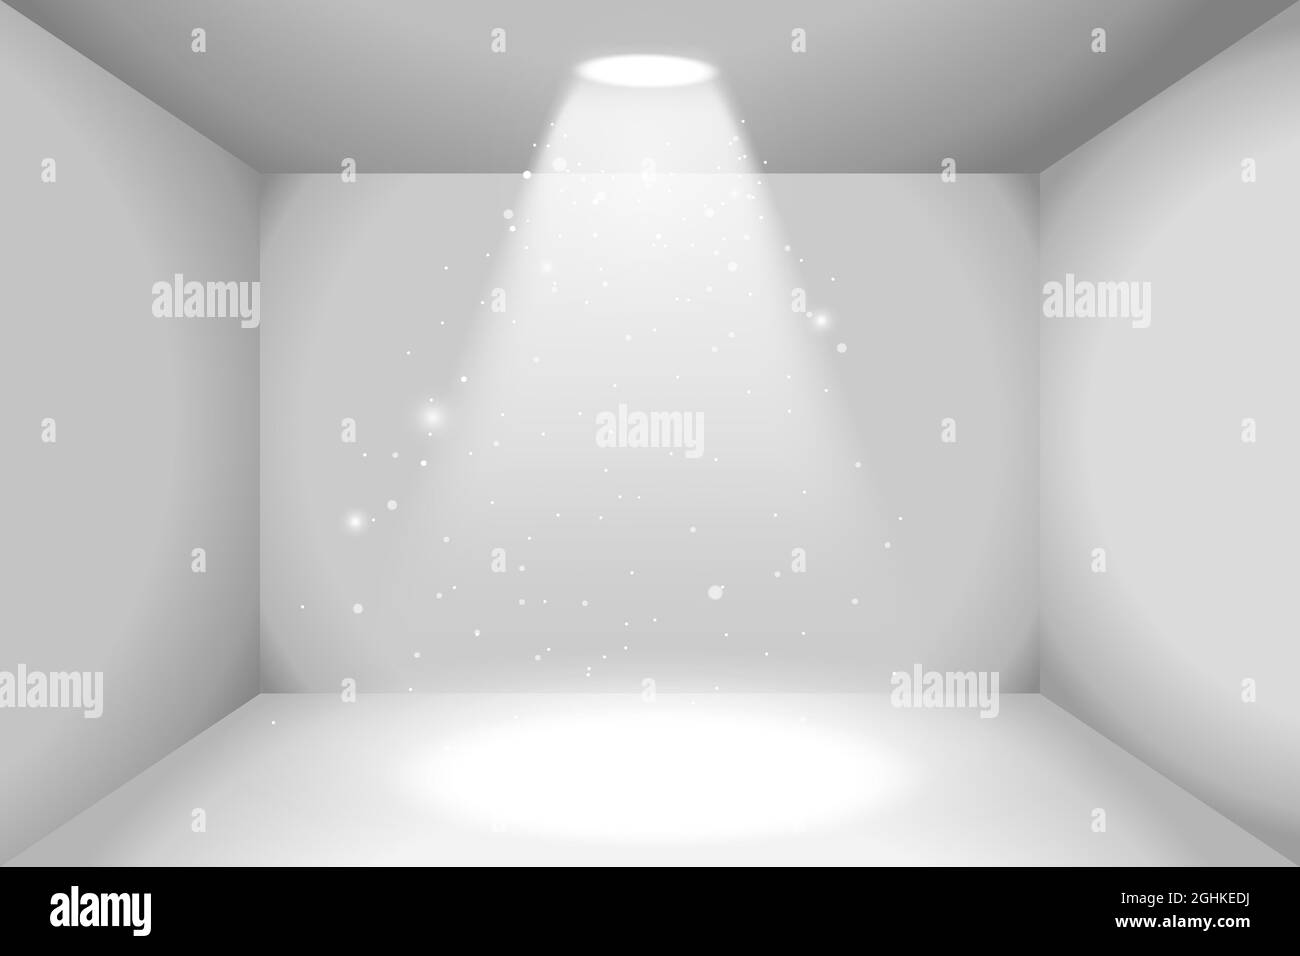 Espace vide réaliste de la boîte blanche avec source lumineuse Illustration de Vecteur